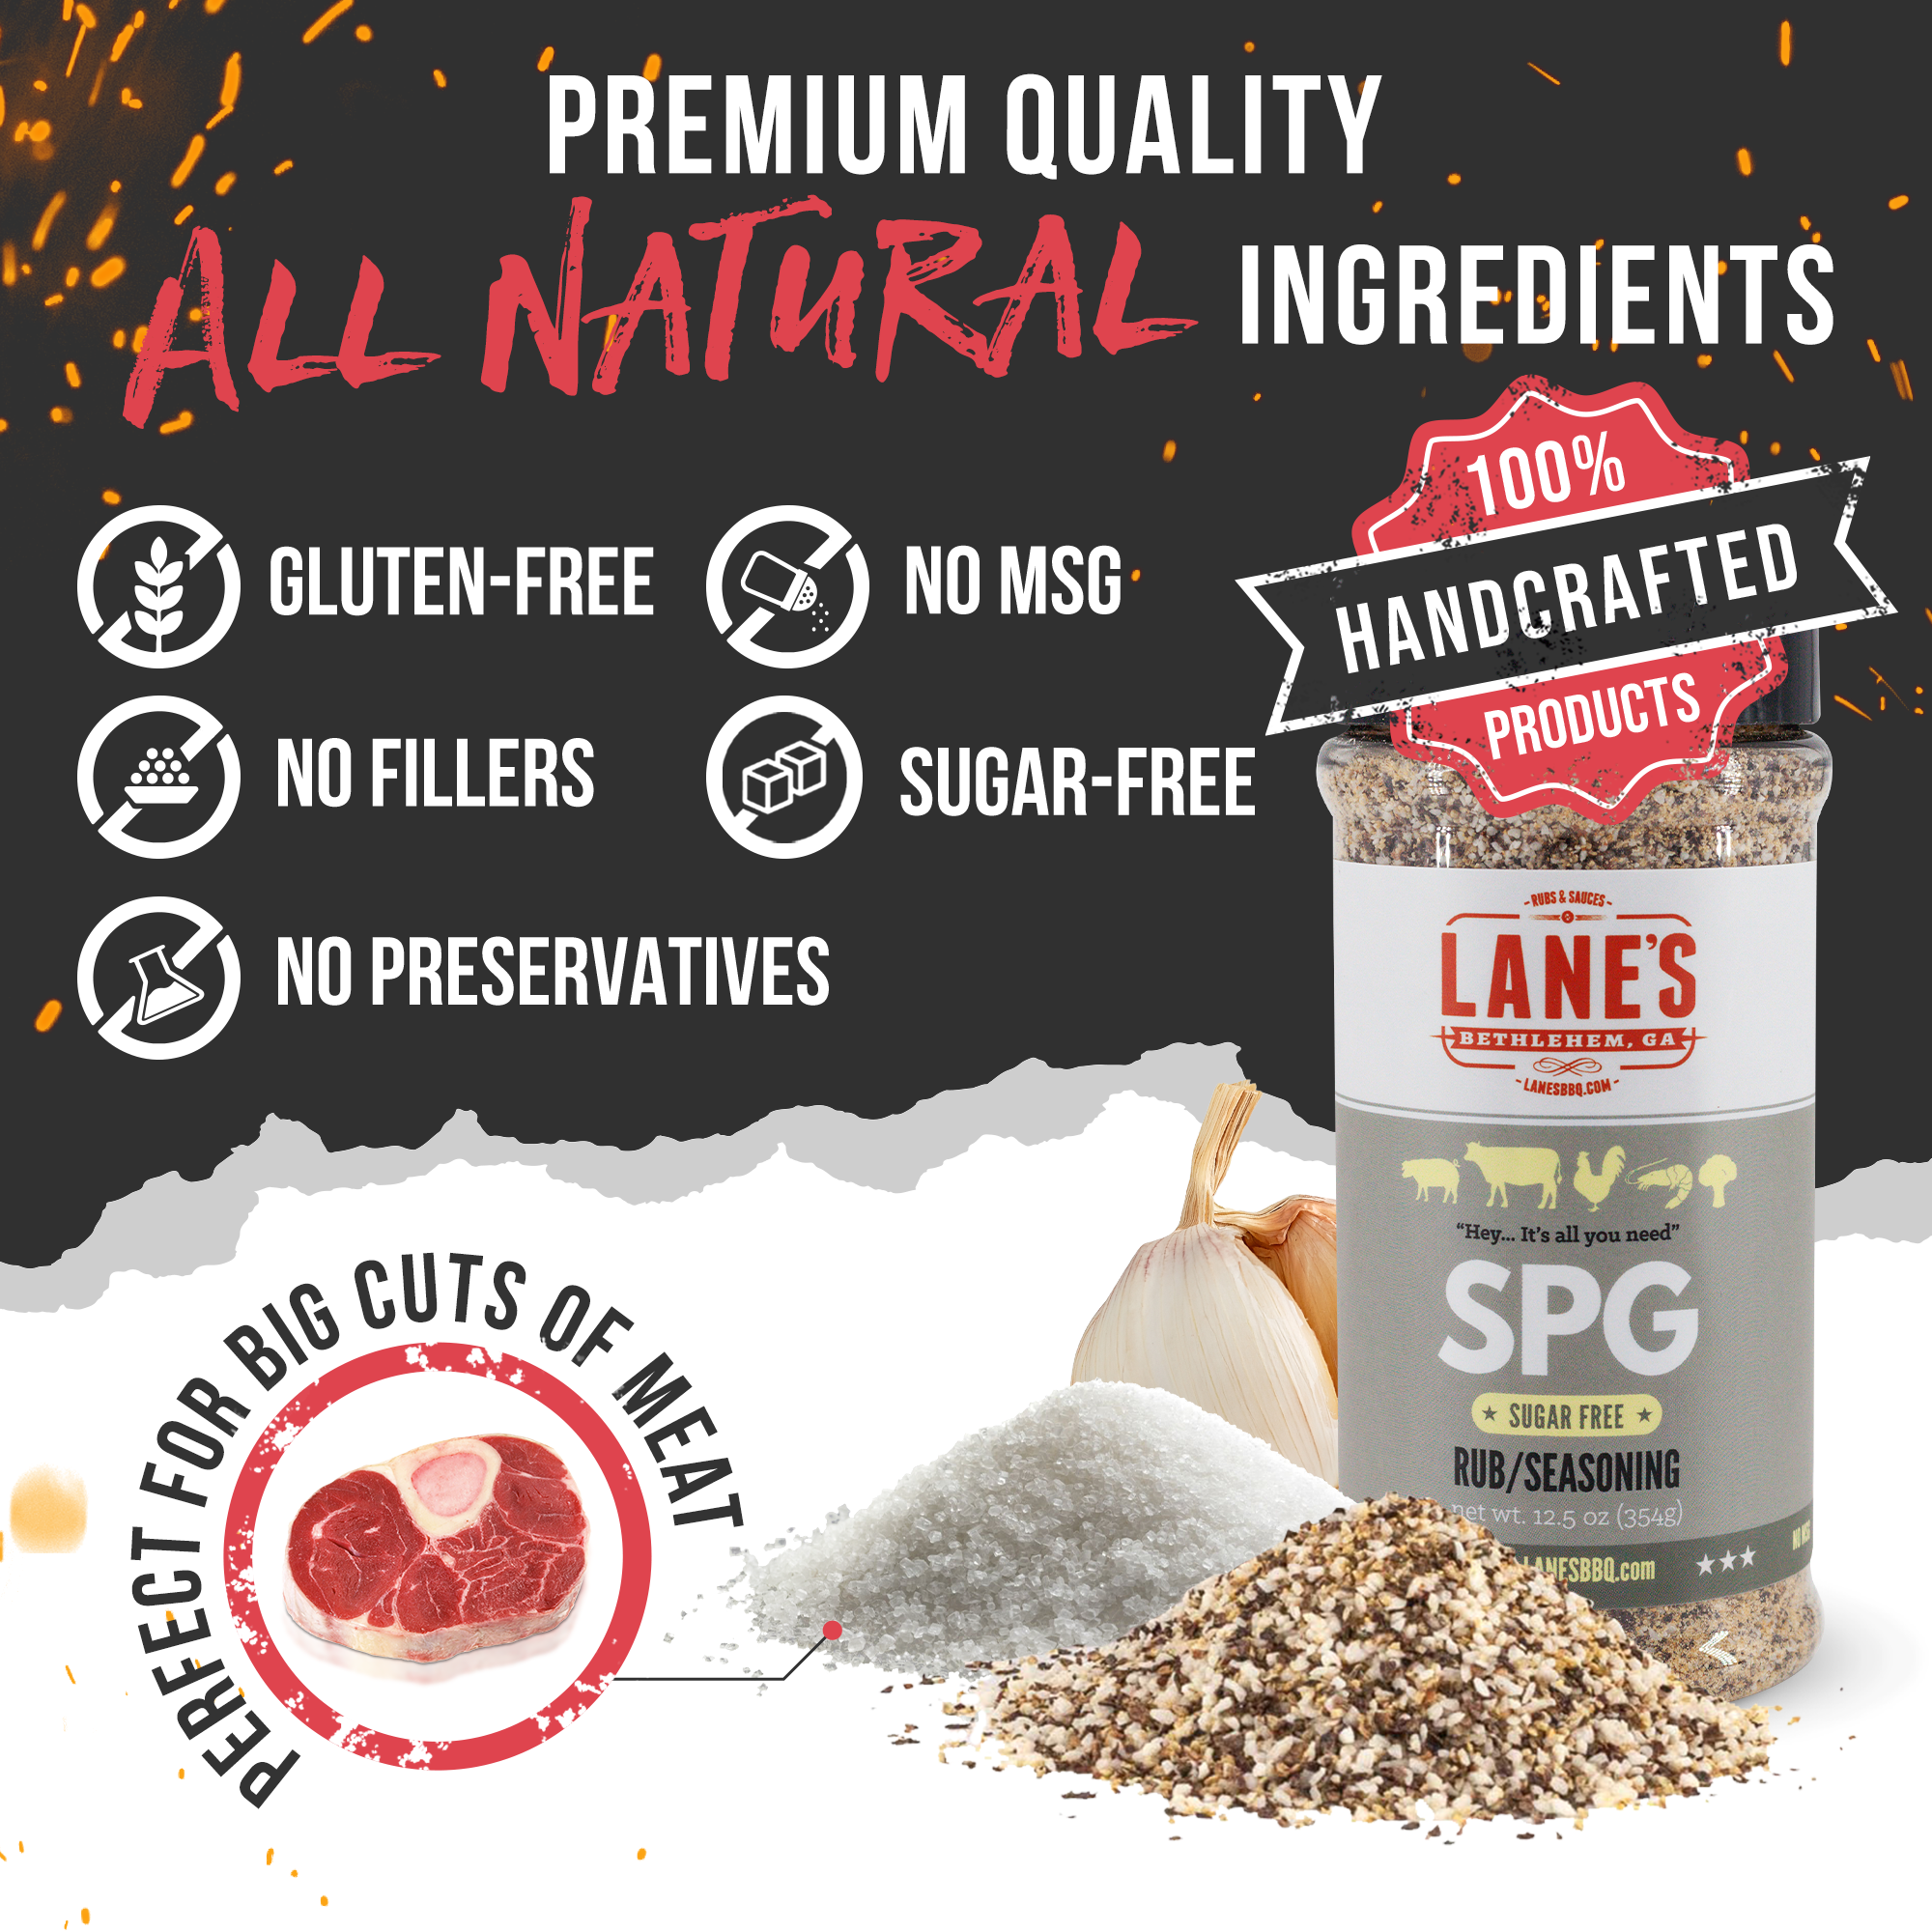 Lane's SPG Seasoning - All Natural